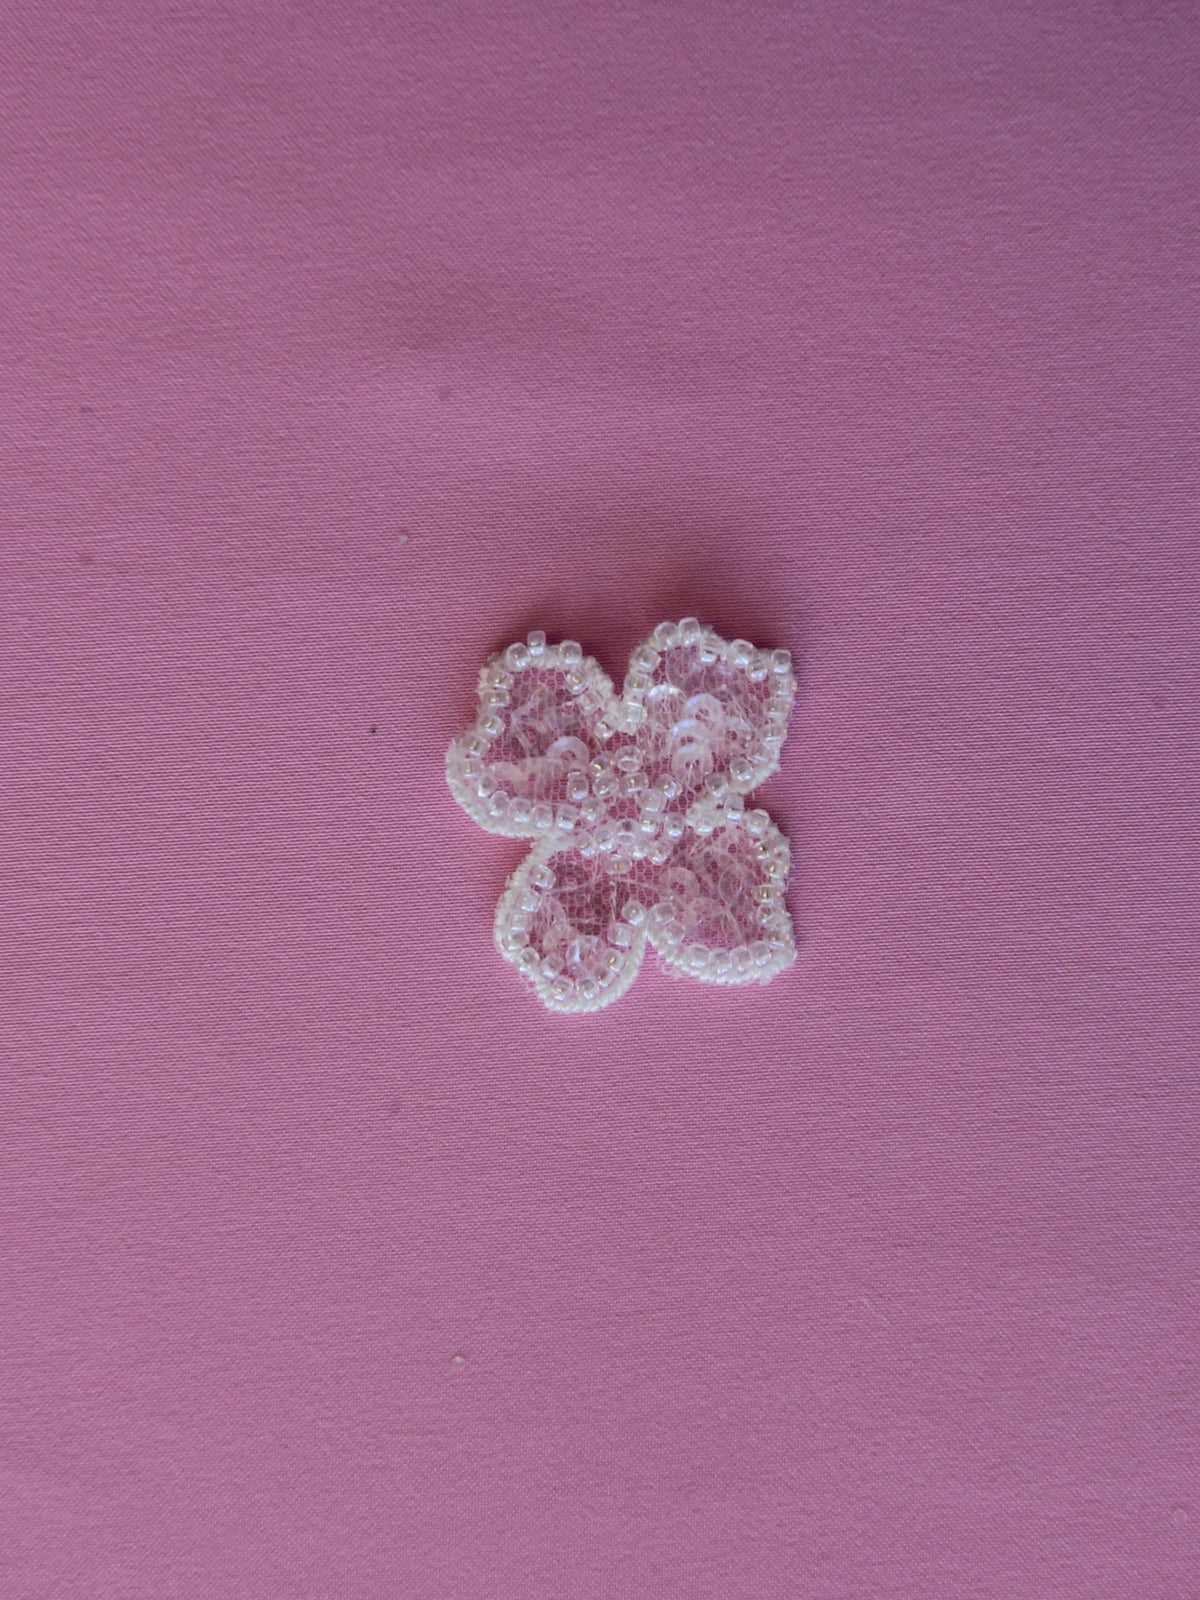 Elfenbeinfarbene Perlenblume – Ringelblume (Beutel mit 10 Stück)